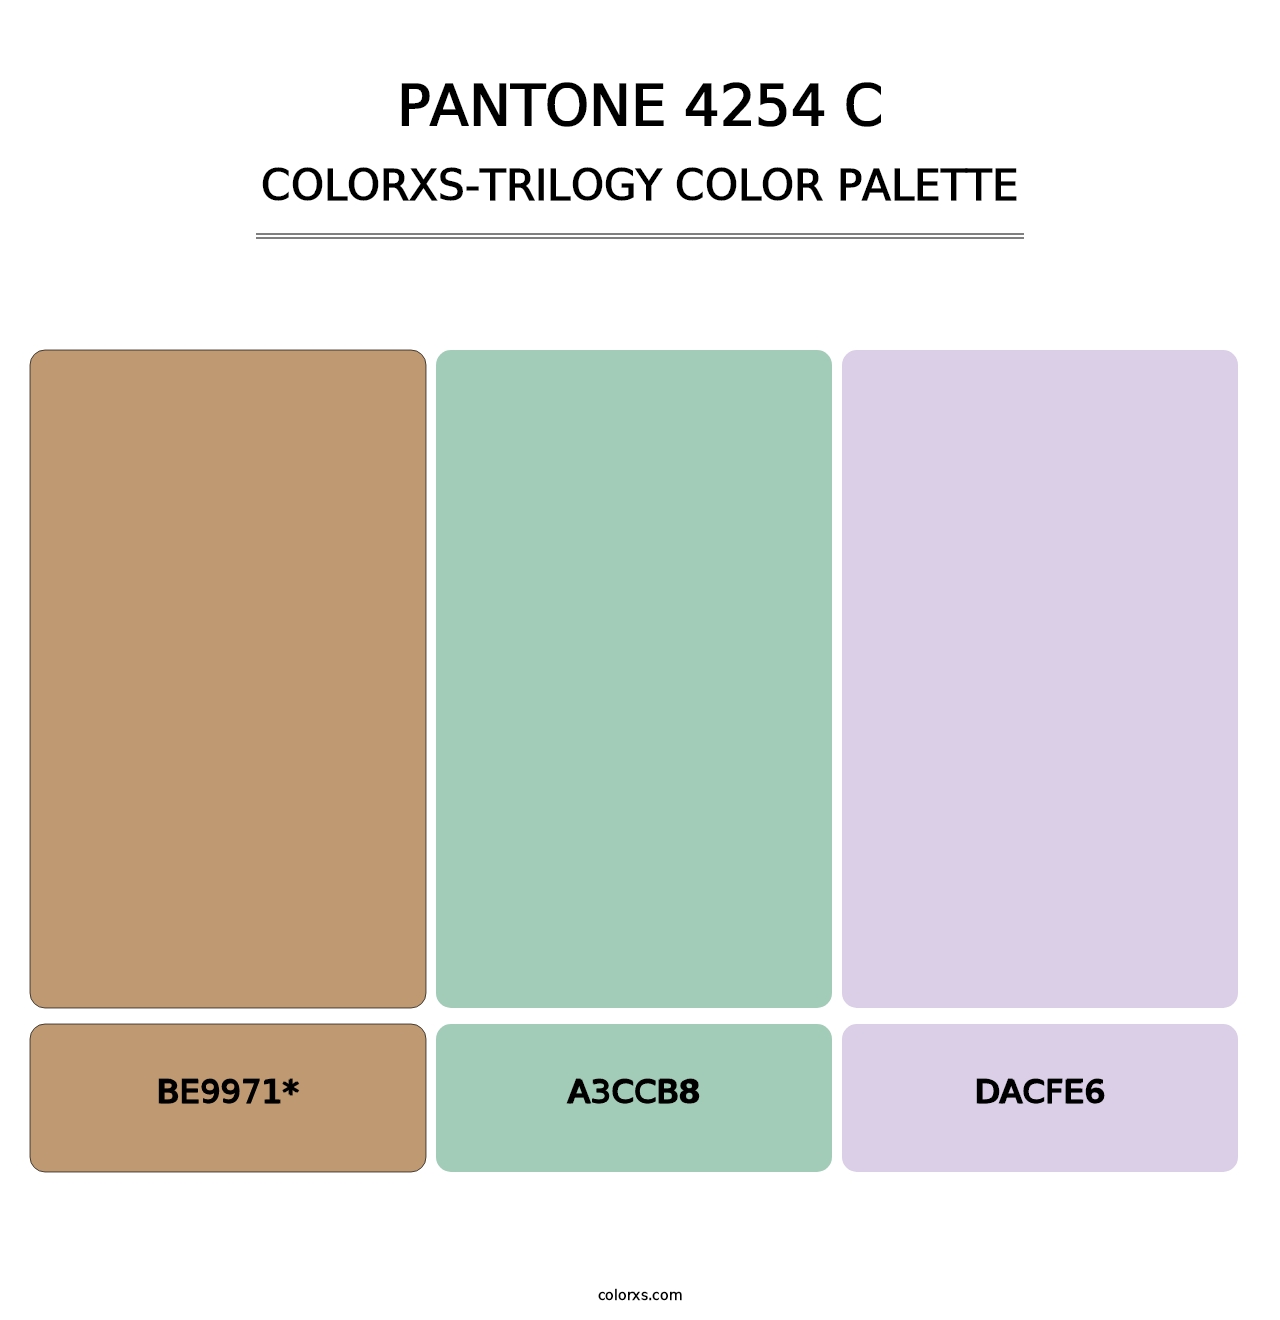 PANTONE 4254 C - Colorxs Trilogy Palette